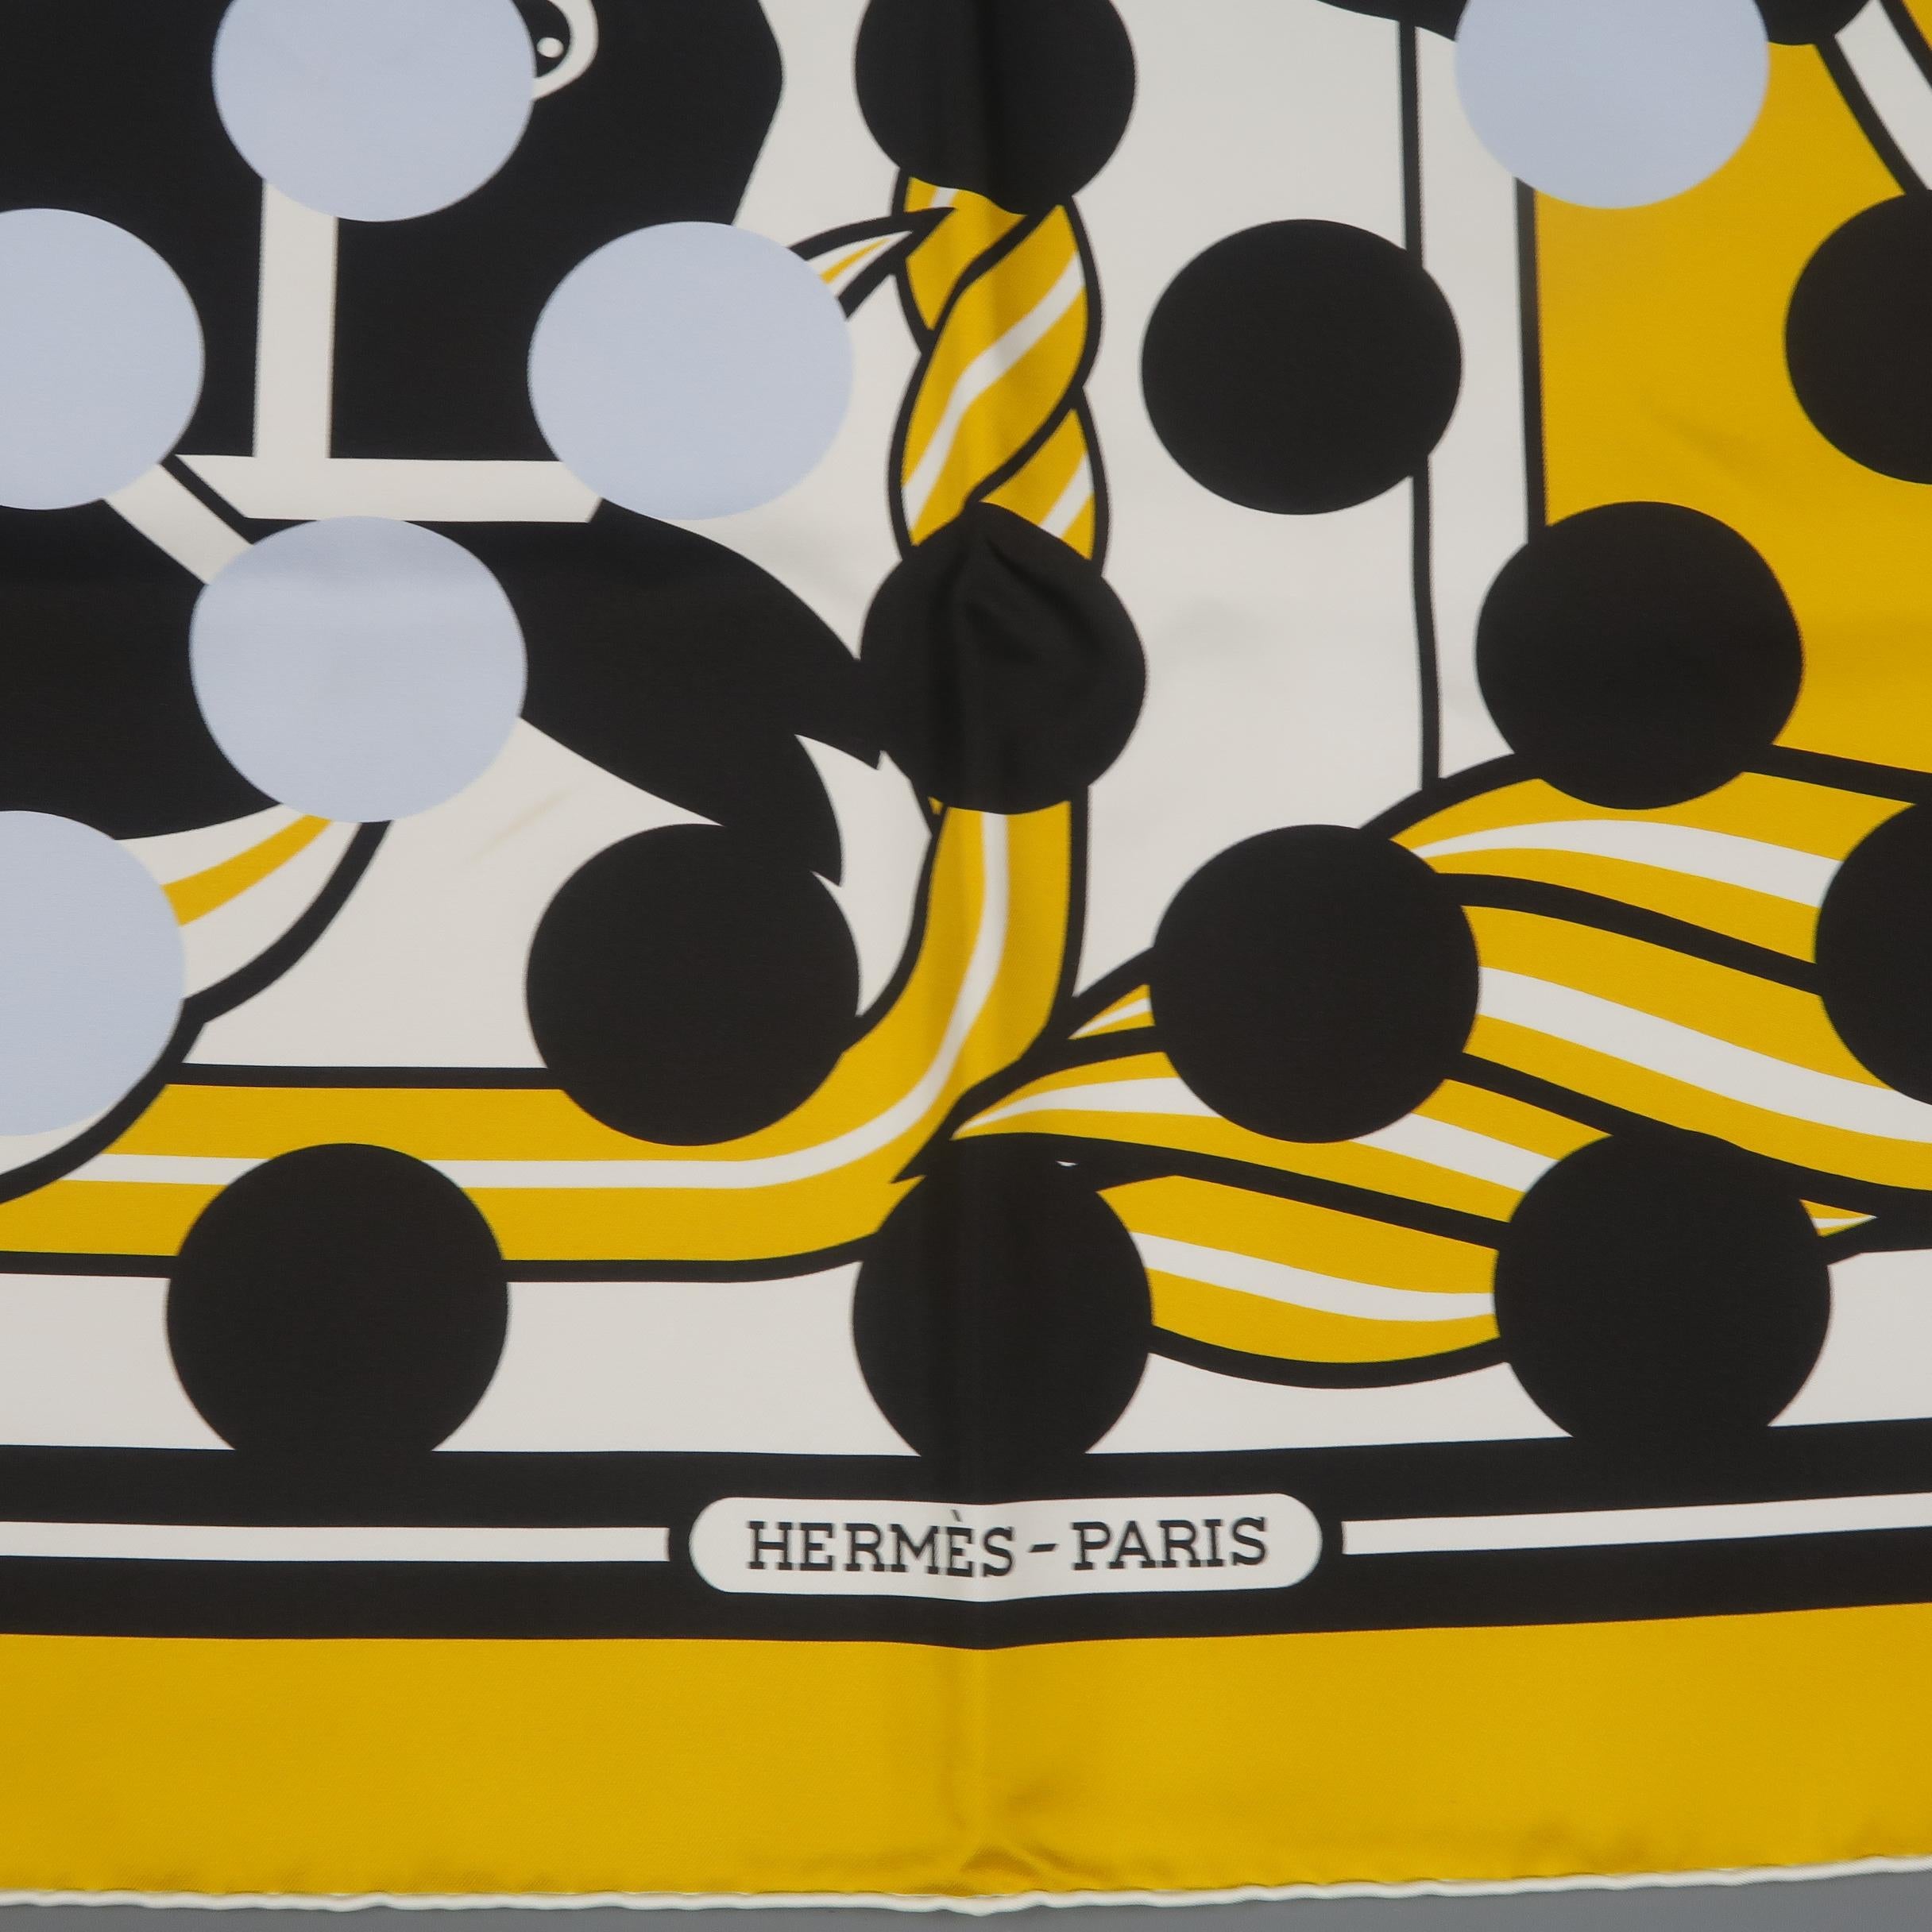 Hermes Comme Des Garcons - For Sale on 1stDibs | hermes.comde, hermes x comme  des garcons, miraculaux